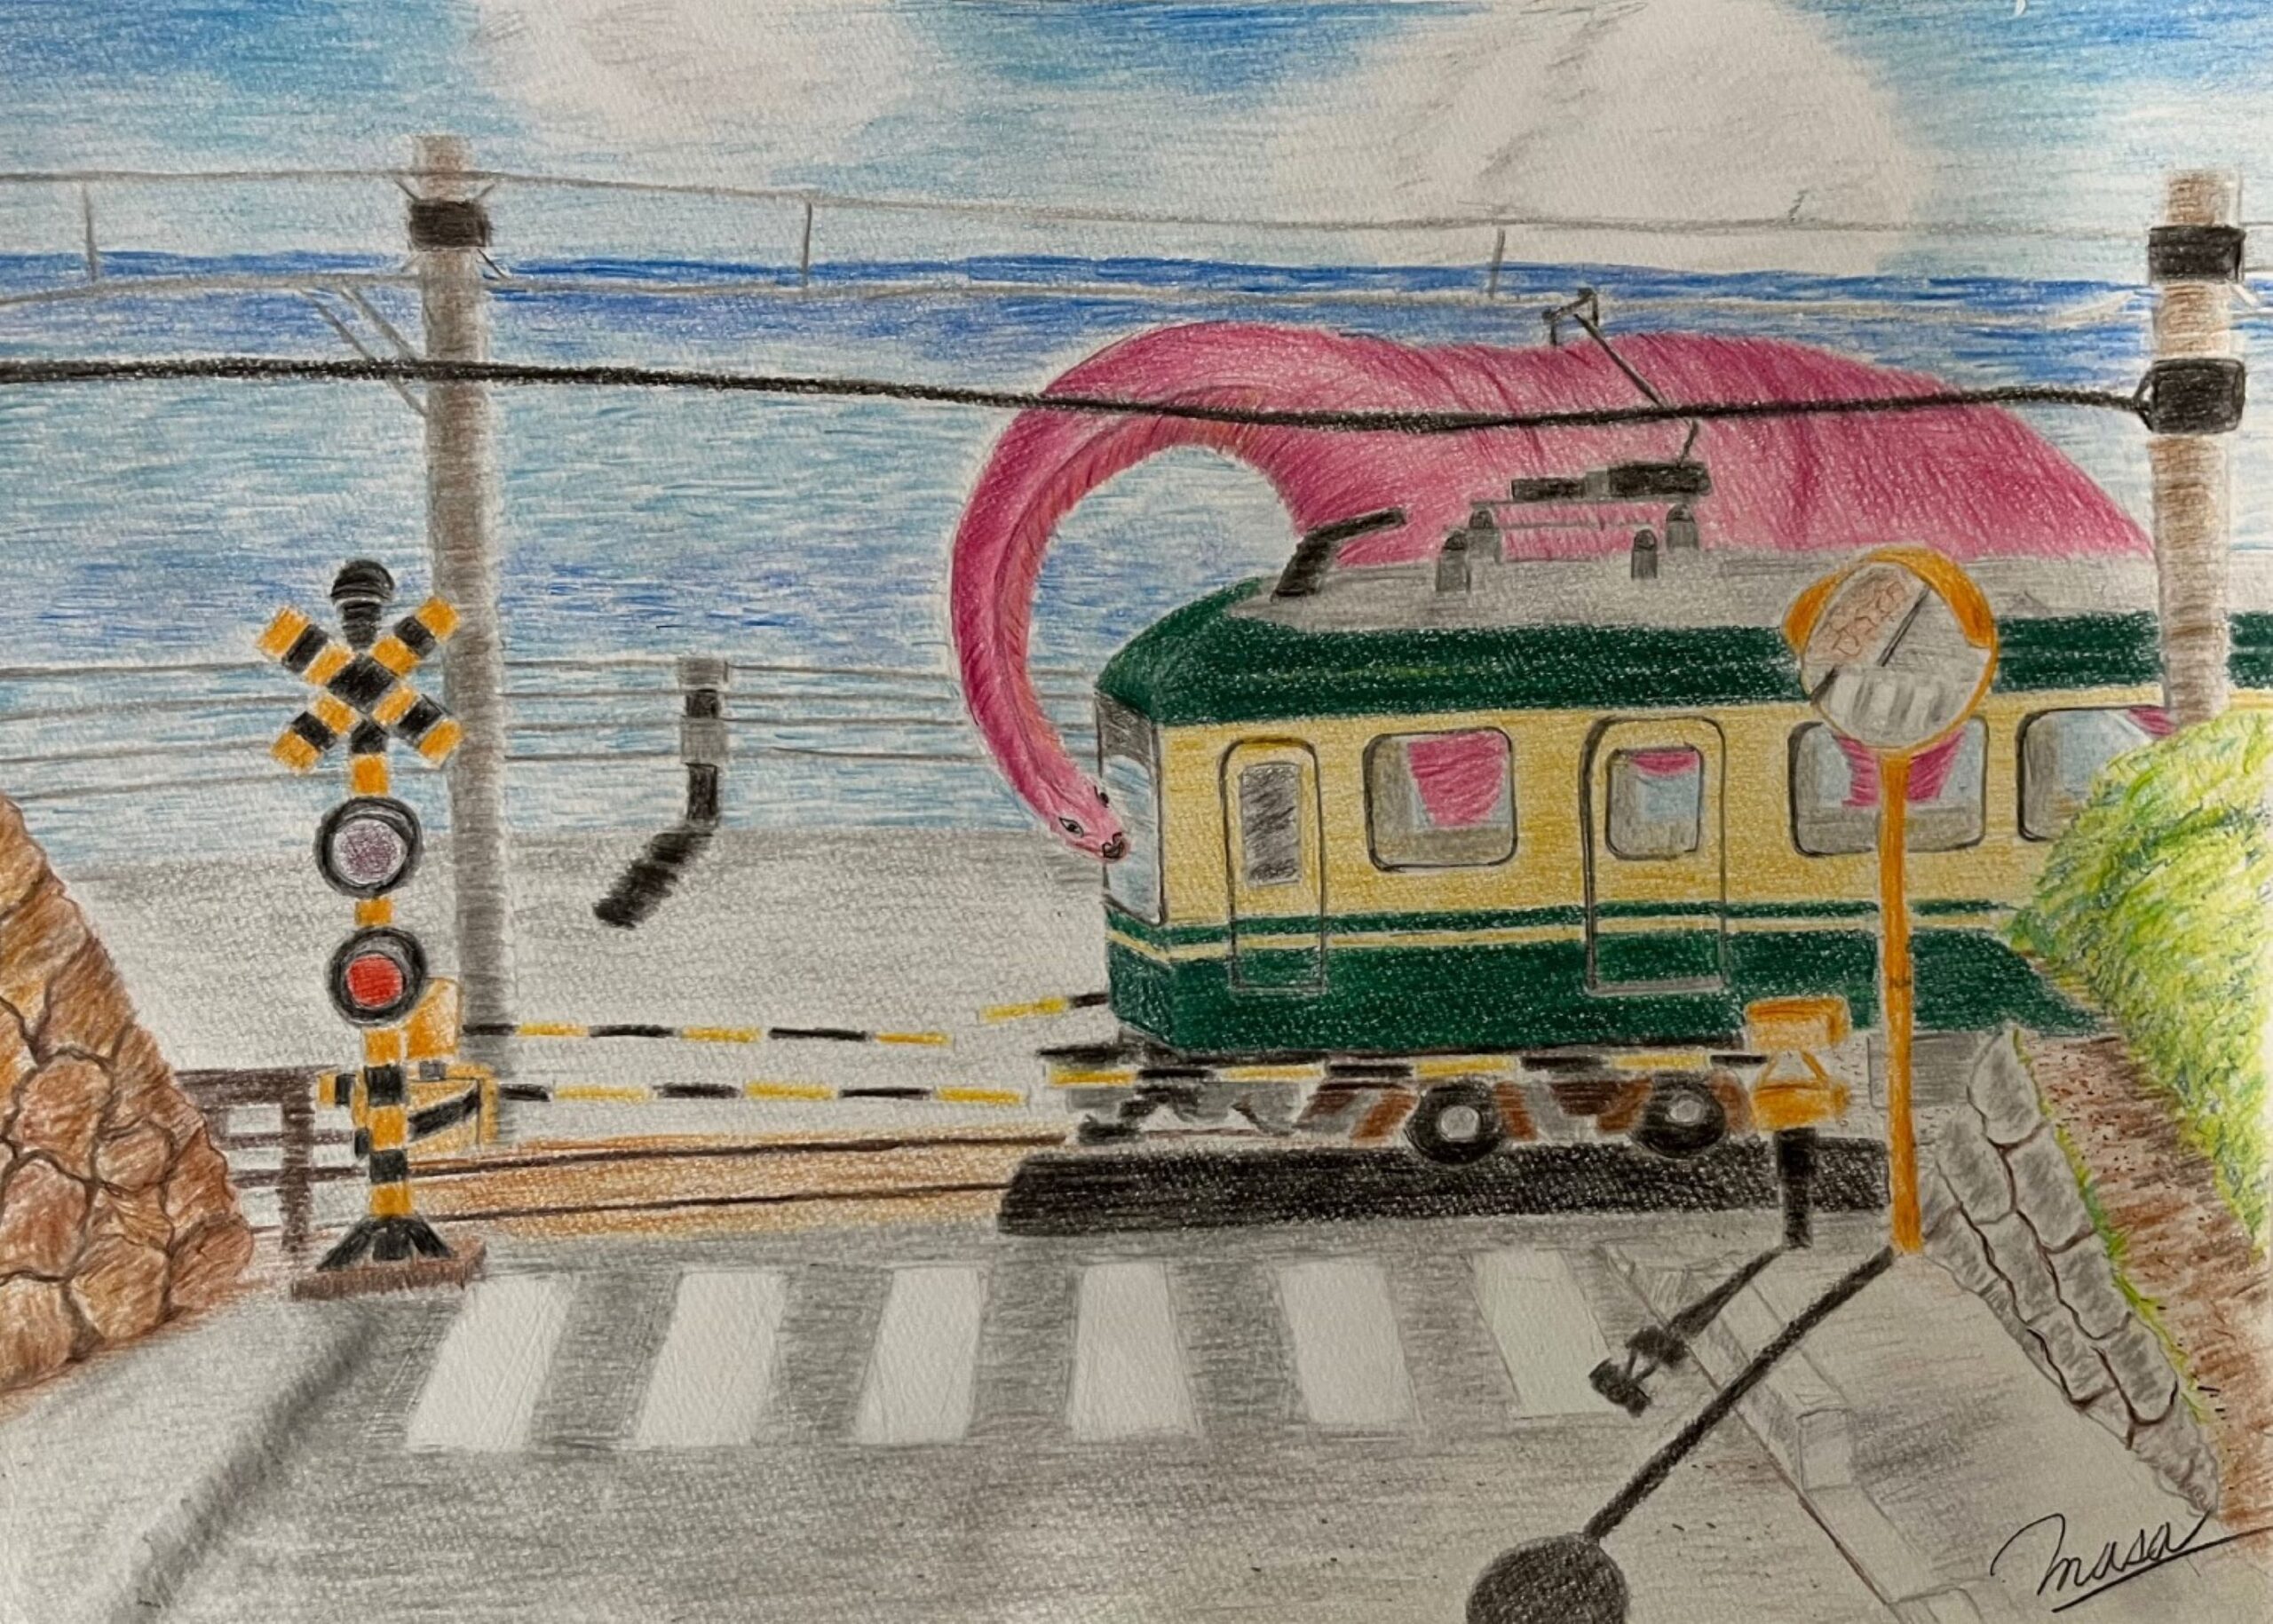 水色の空に、青い海。海沿いには、右から左に向かって、路面電車が走っている。電車の向こう側にピンク色の大きな恐竜がいて、長い首を伸ばし、運転席を覗き込んでいる。線路の手前には踏切があり、信号の色は赤になっている。右側にあるカーブミラーの影が長く伸びて、踏切の手前の横断歩道に映り込んでいる。